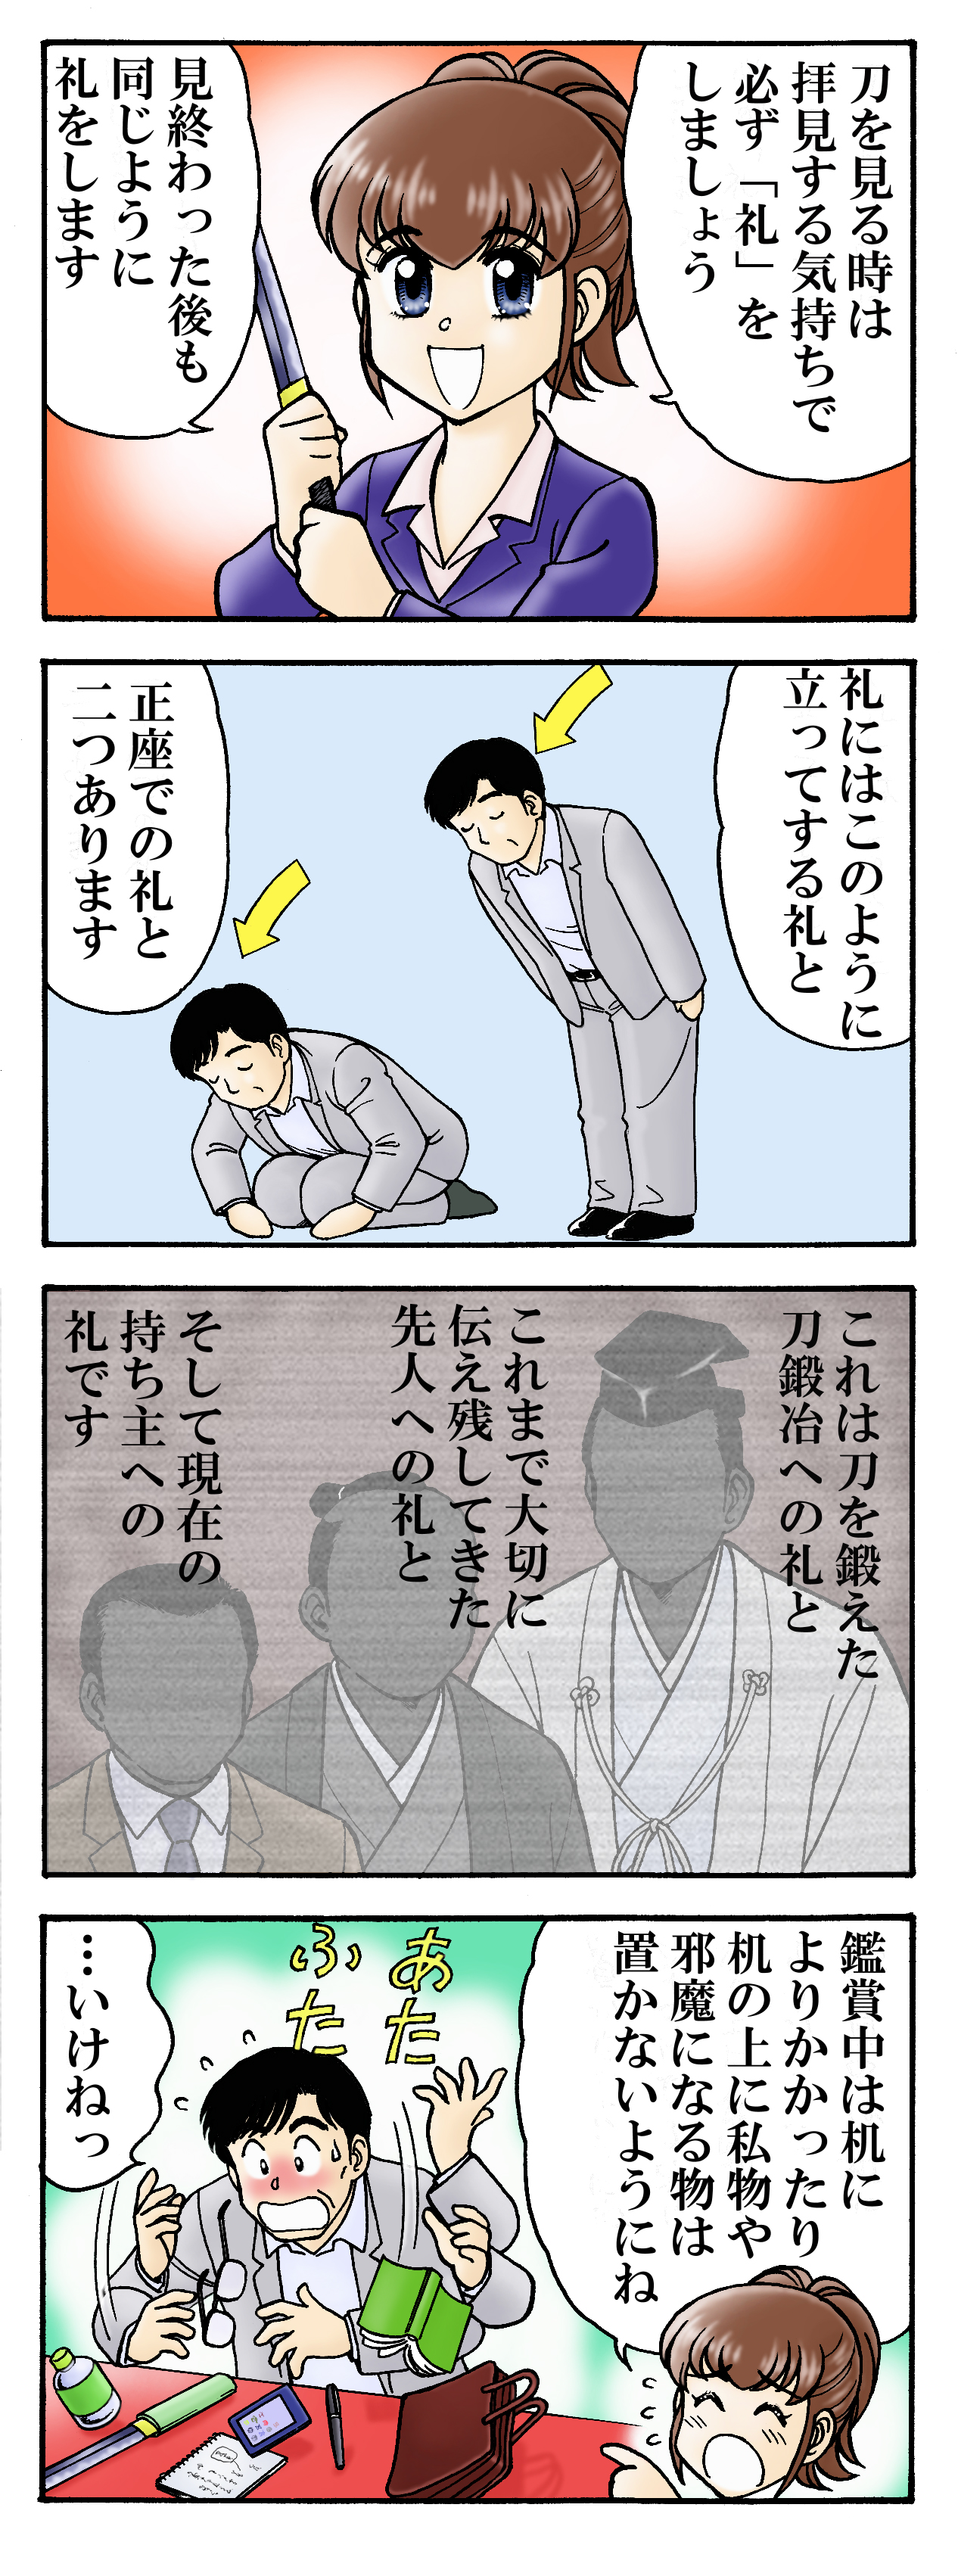 日本美術刀剣保存協会 静岡県支部刀剣マナー講座その5「鑑賞する前におじぎをする」